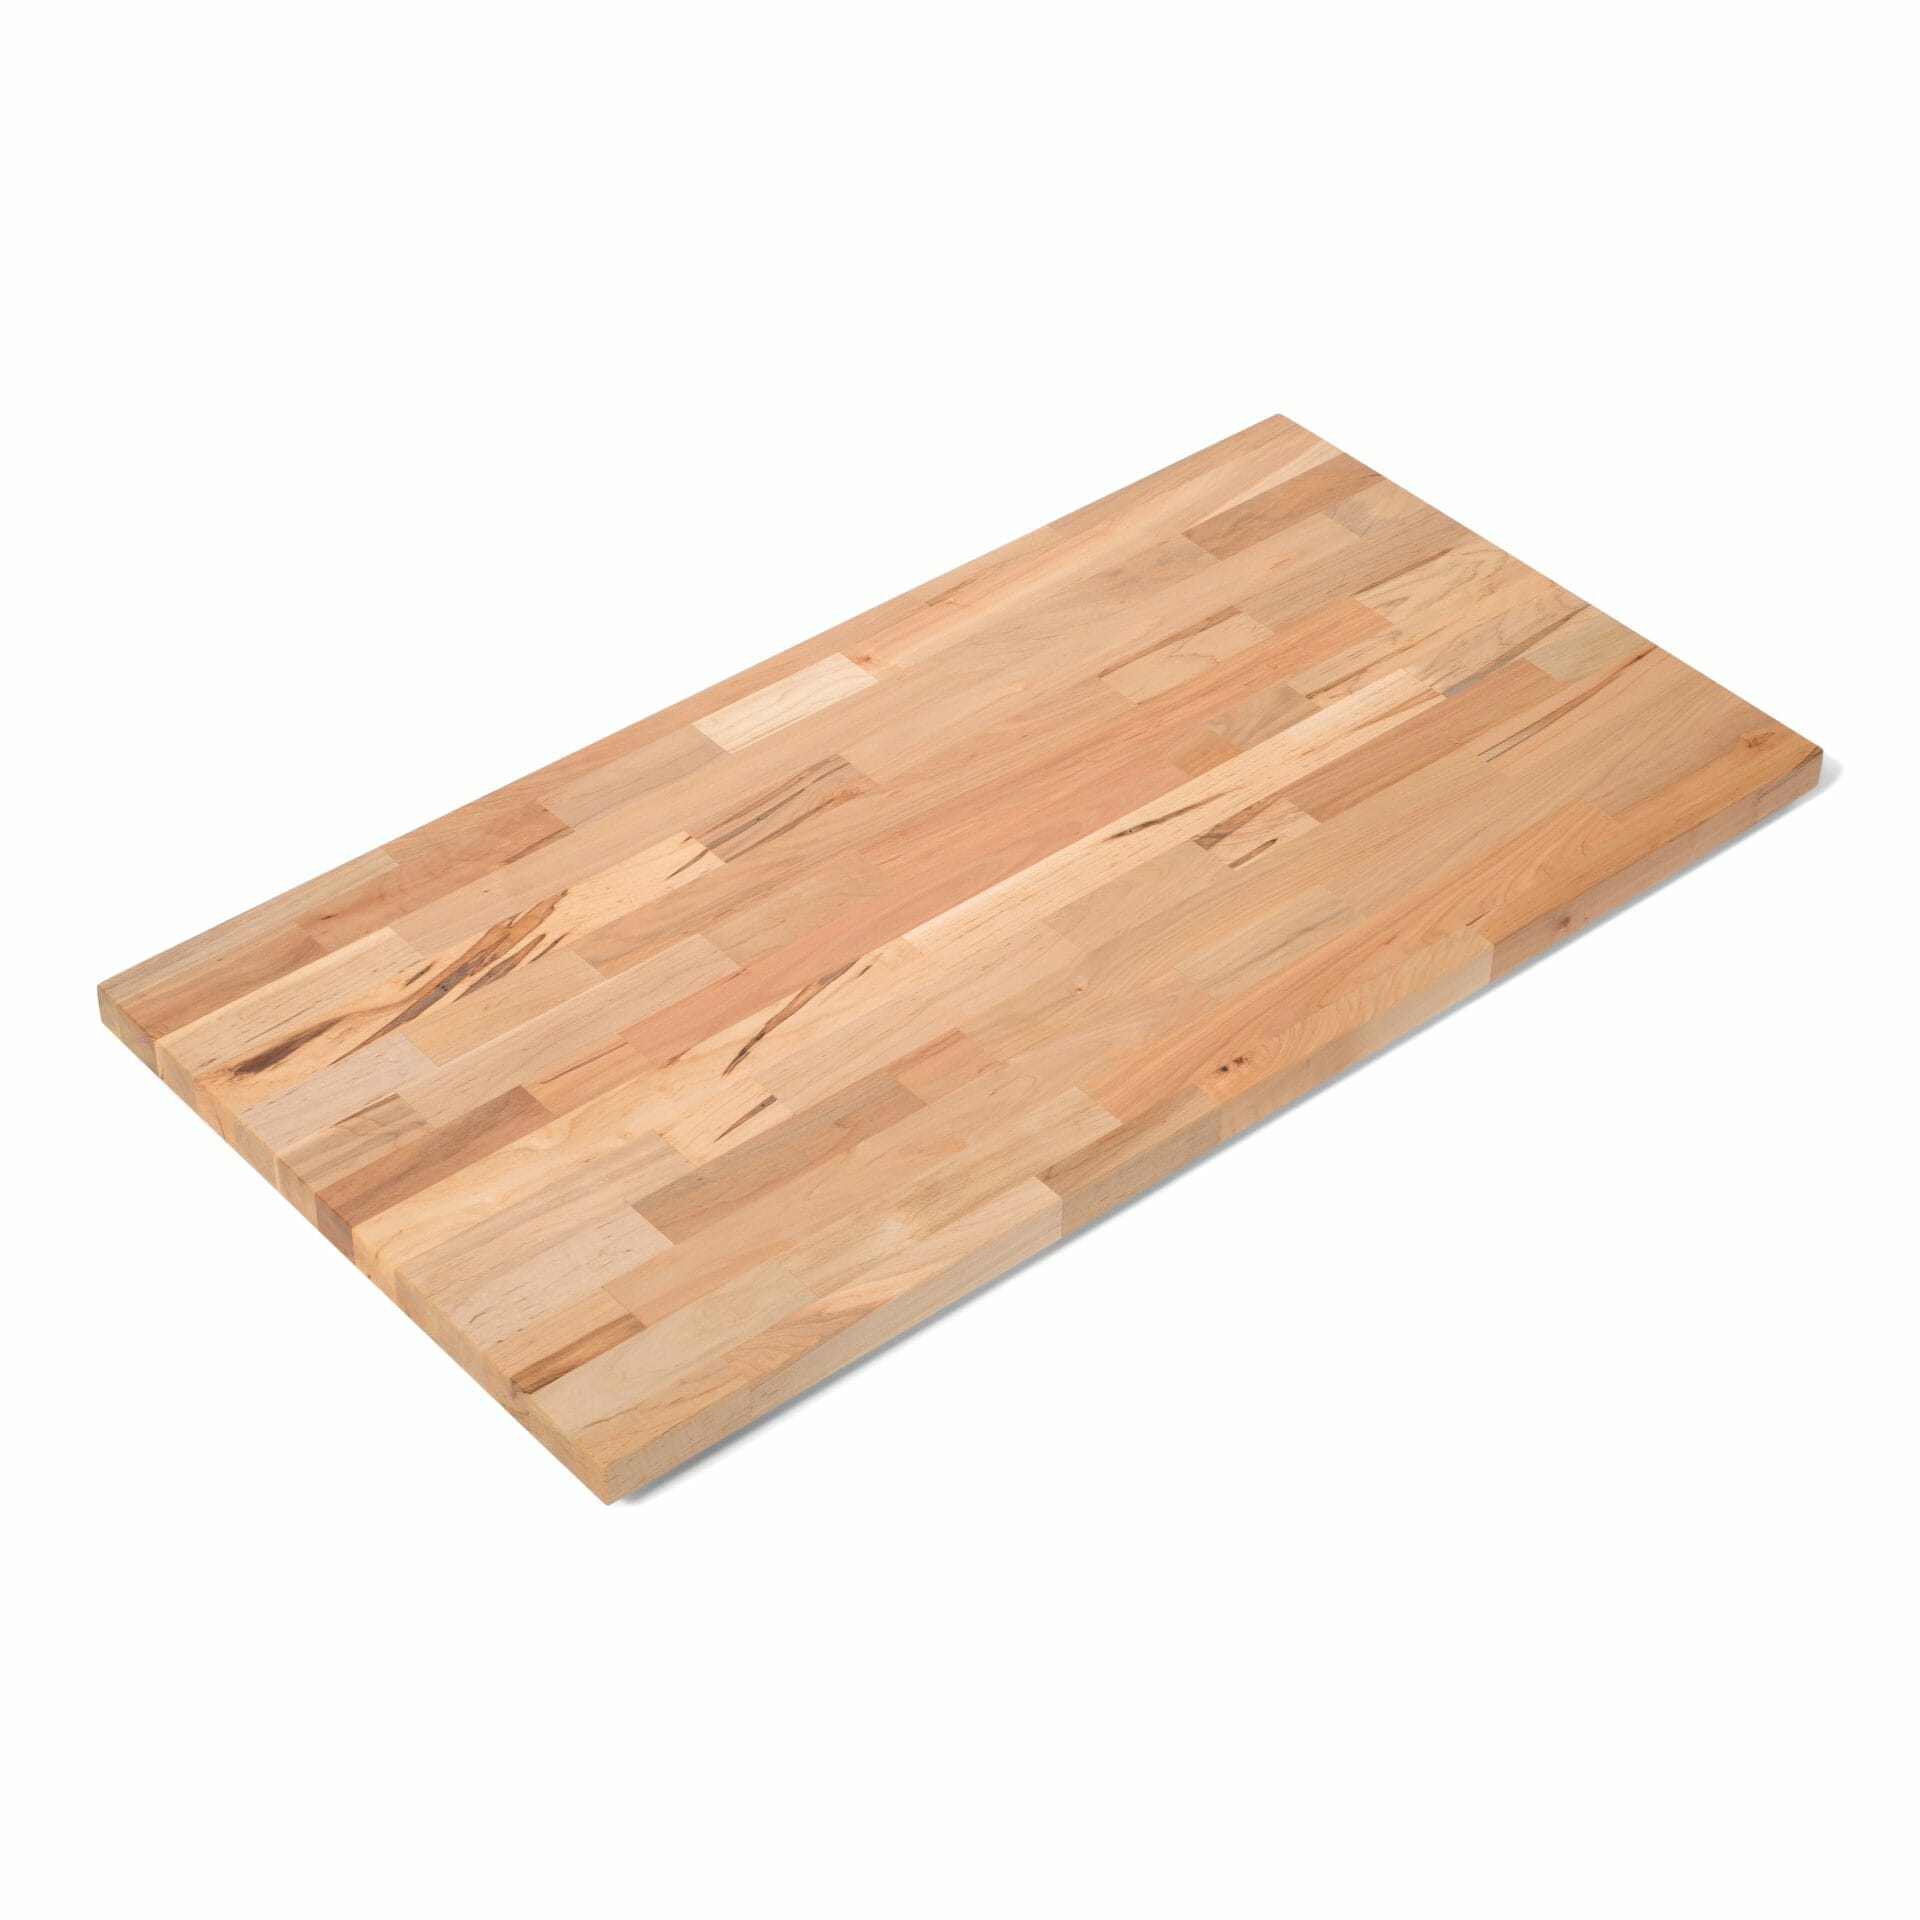 maple wood butcher block countertop table top